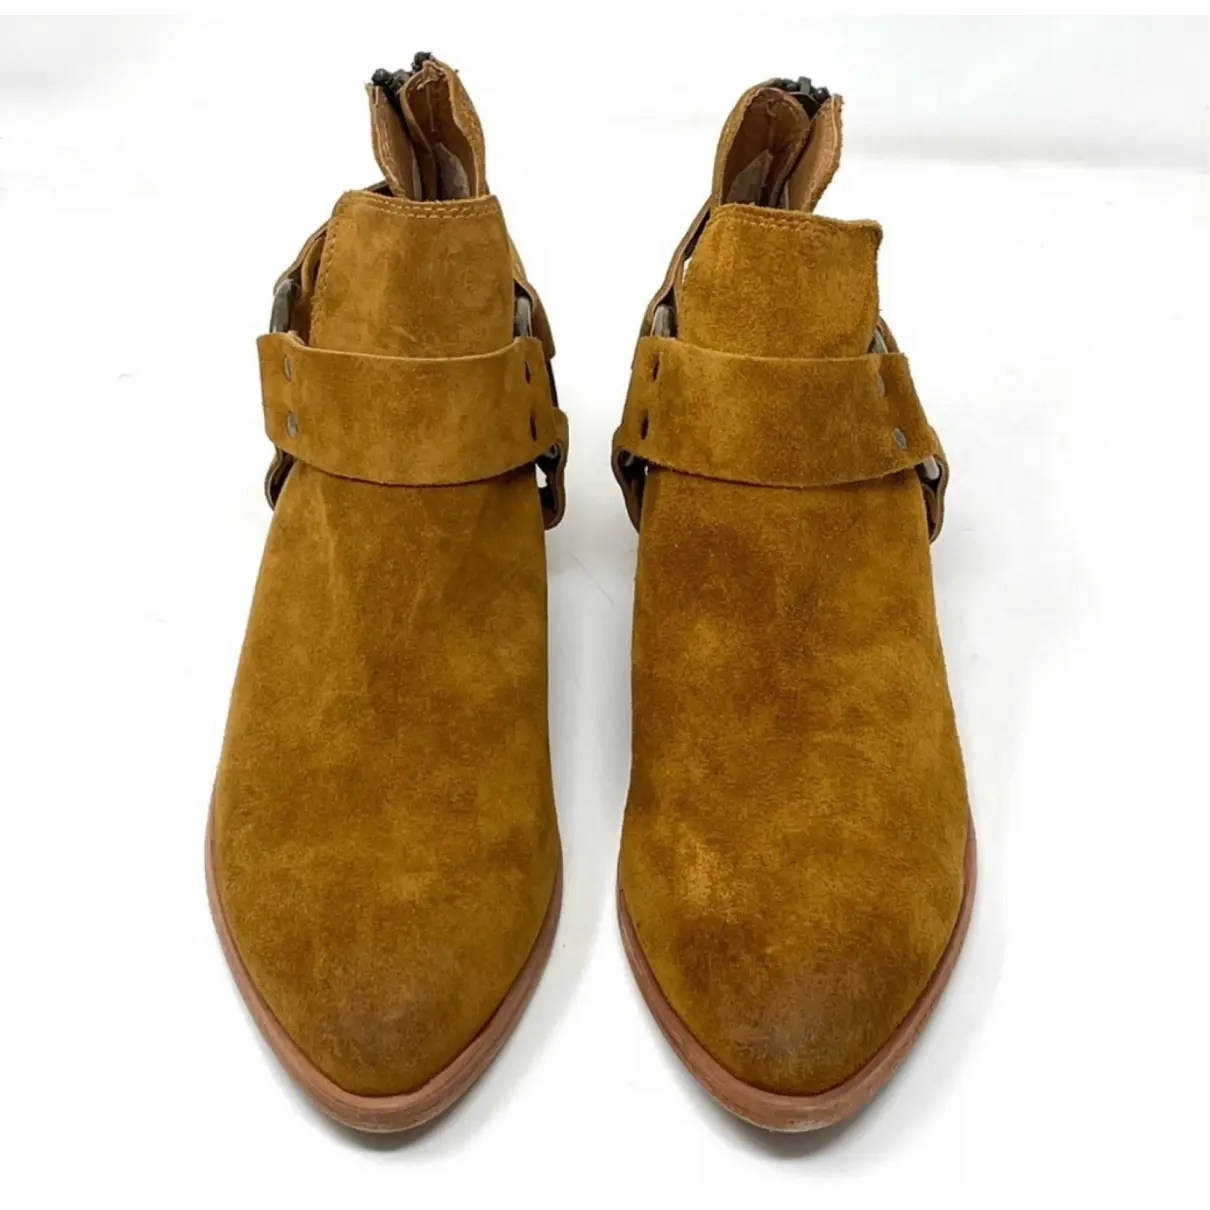 Buy Frye Western boots online